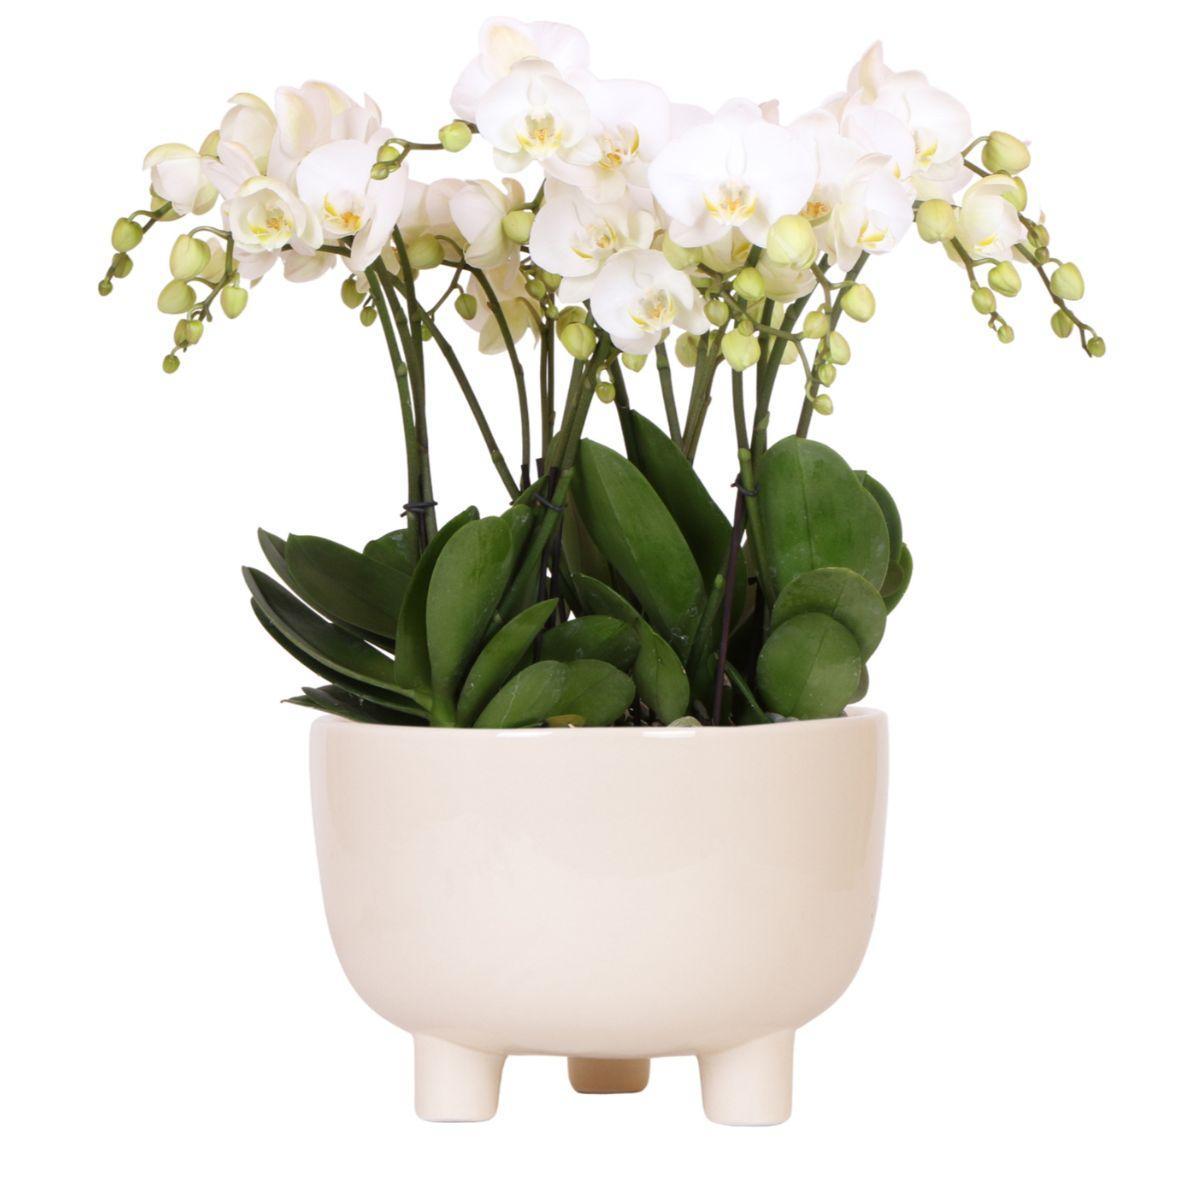 Witte plantenset met 3 orchideeën in een Gummy schaal, inclusief waterreservoir voor zelfvoorziening.